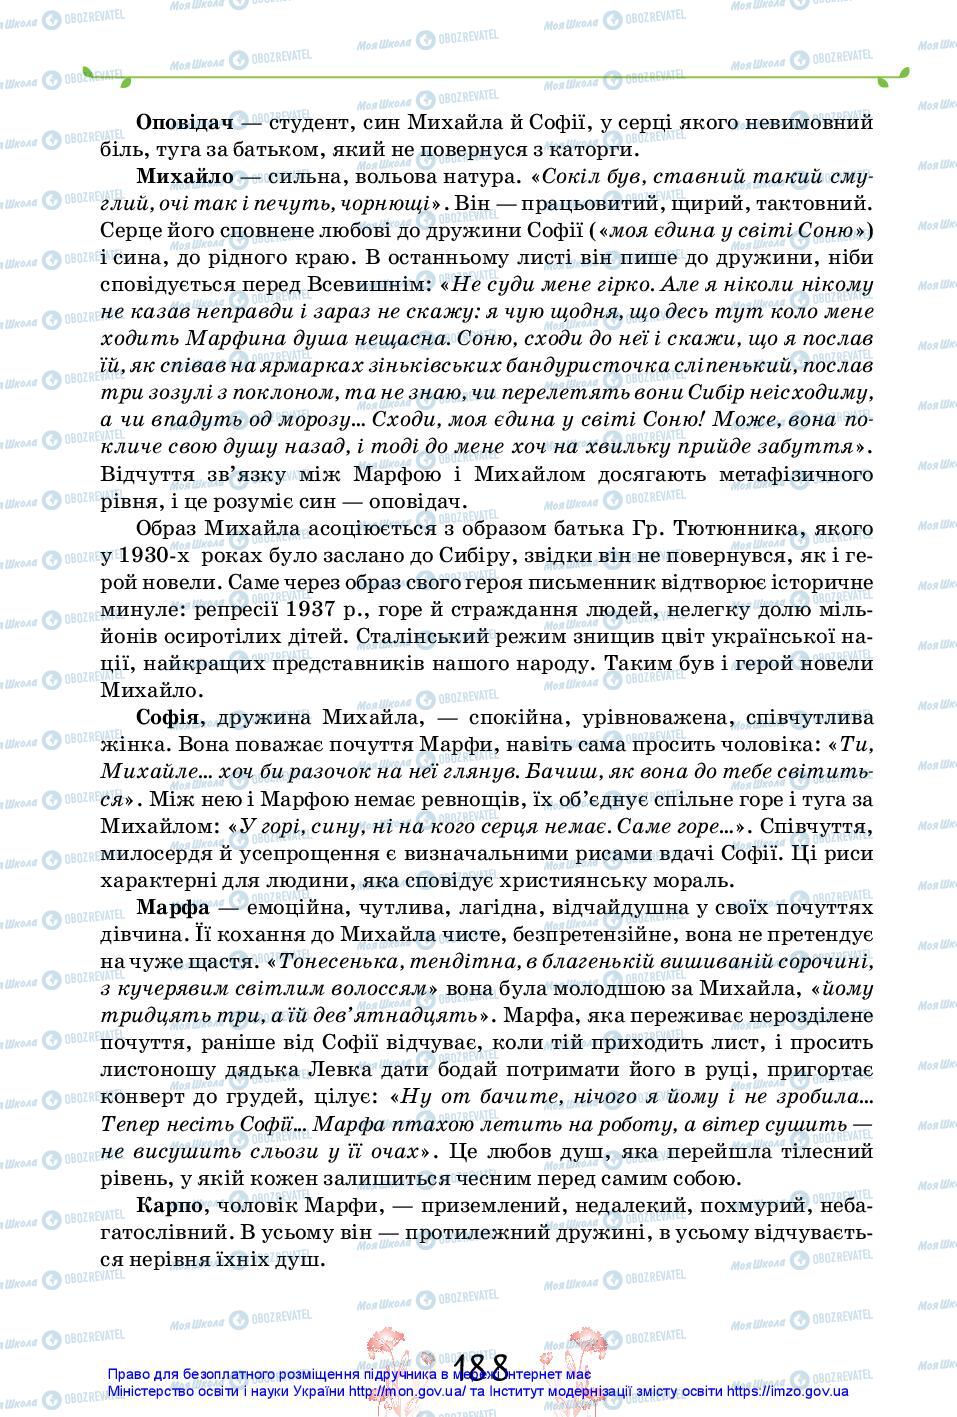 Підручники Українська література 11 клас сторінка 188